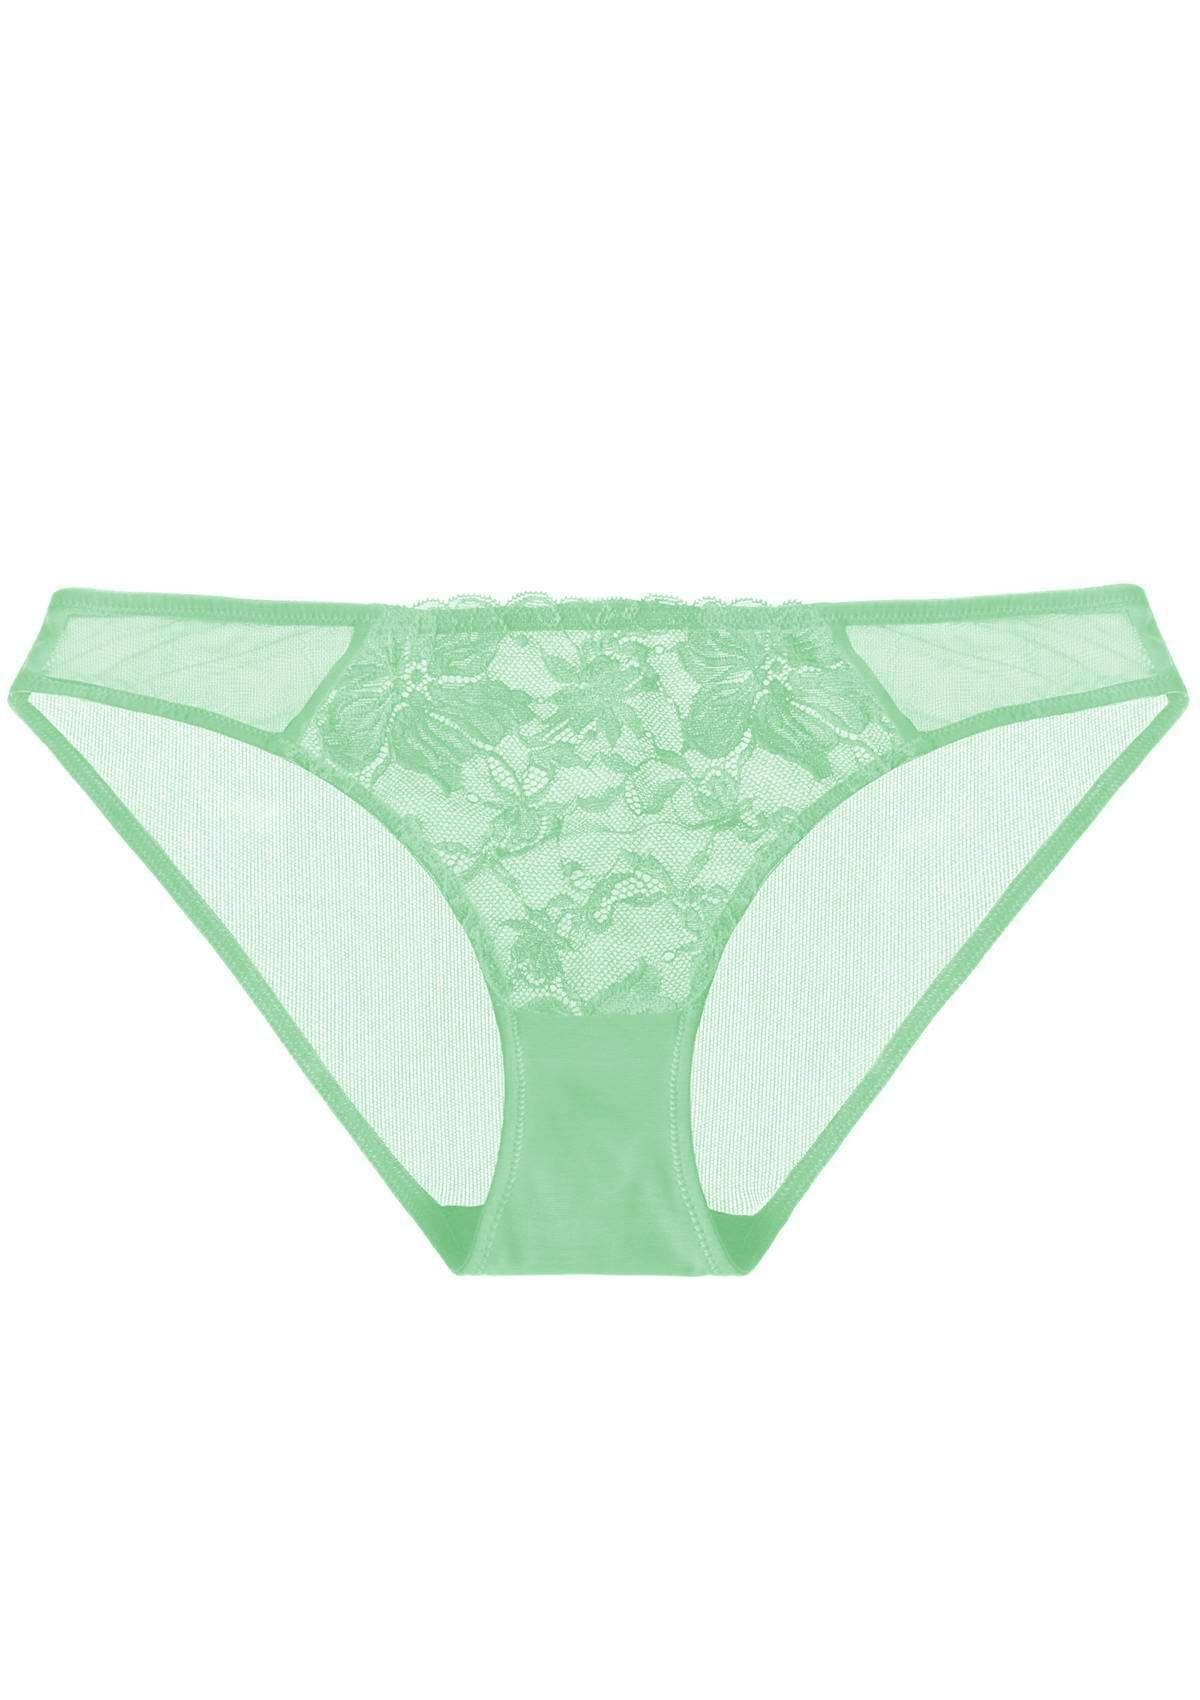 HSIA Pretty In Petals Mid-Rise Sexy Stylish Lace MESH Underwear  - XXXL / Bright Green